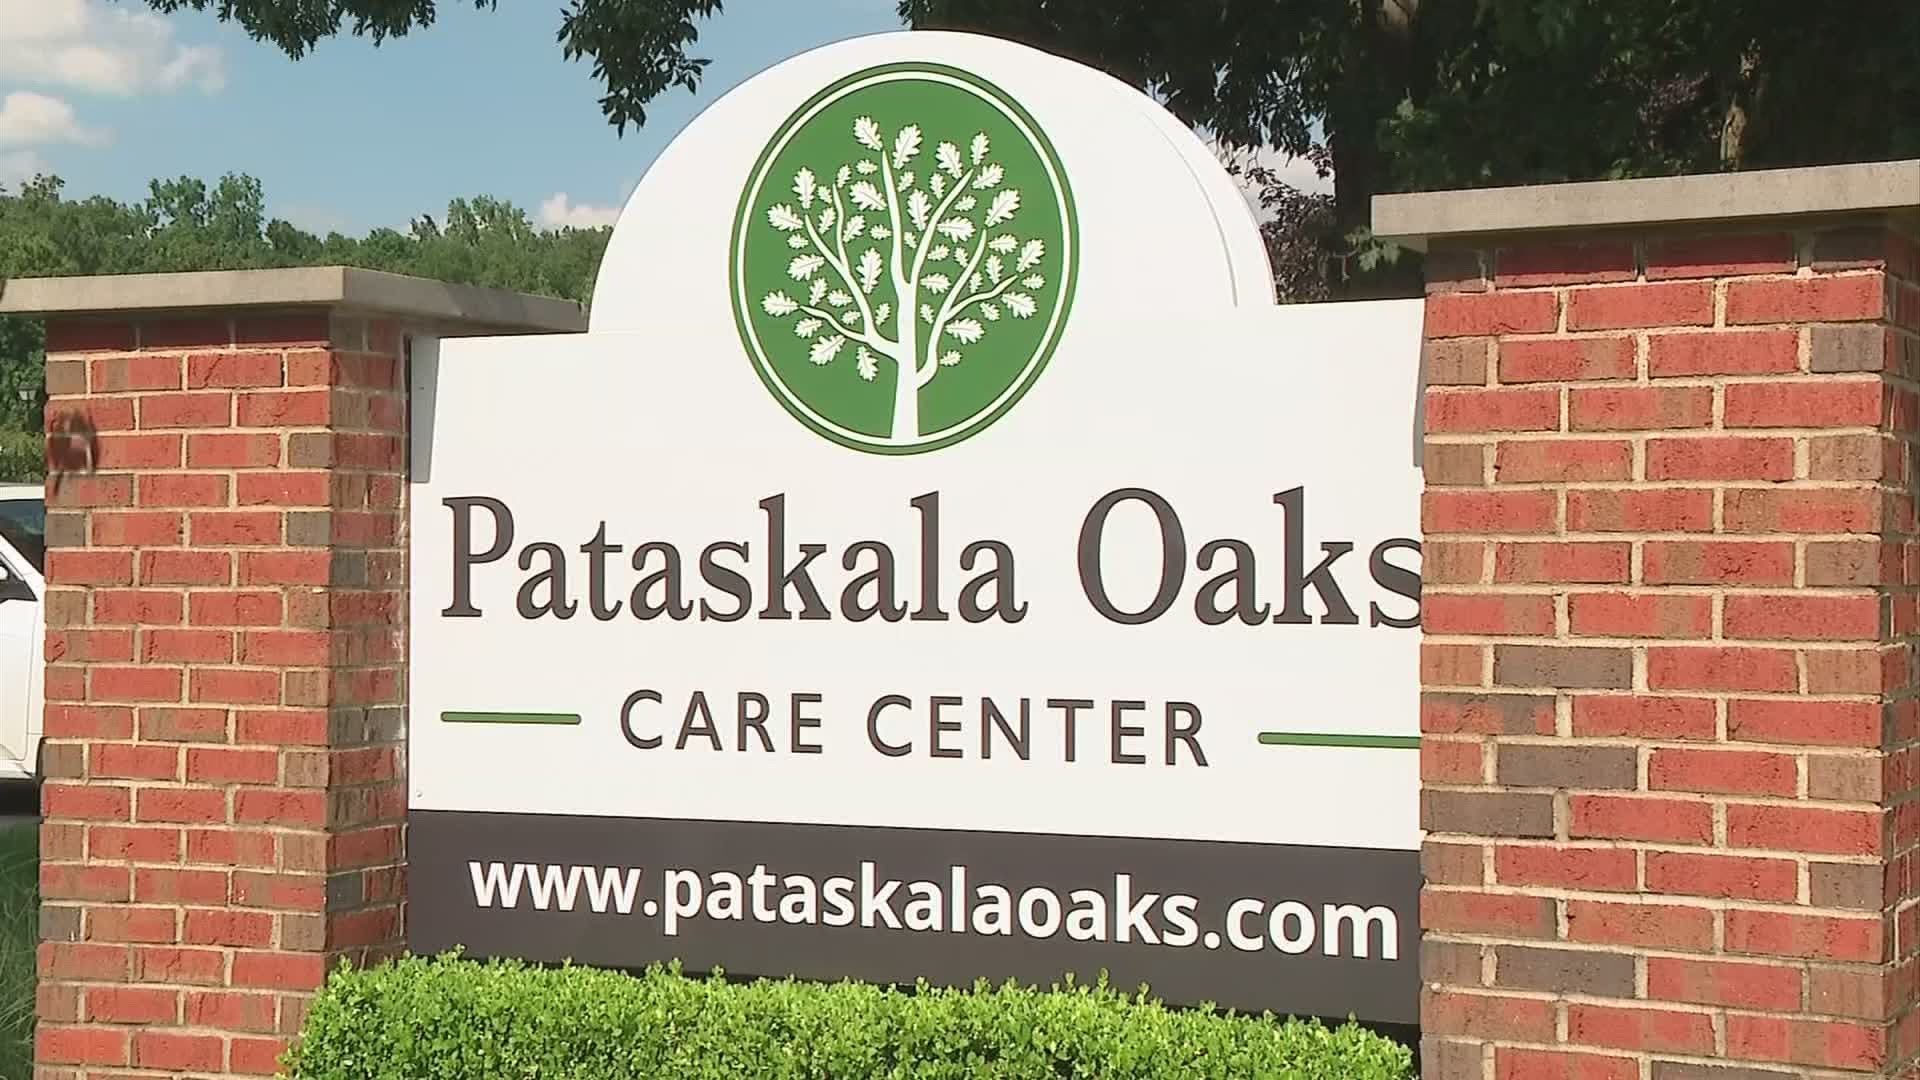 Pataskala nursing home optimistic for visitors despite recent uptick in